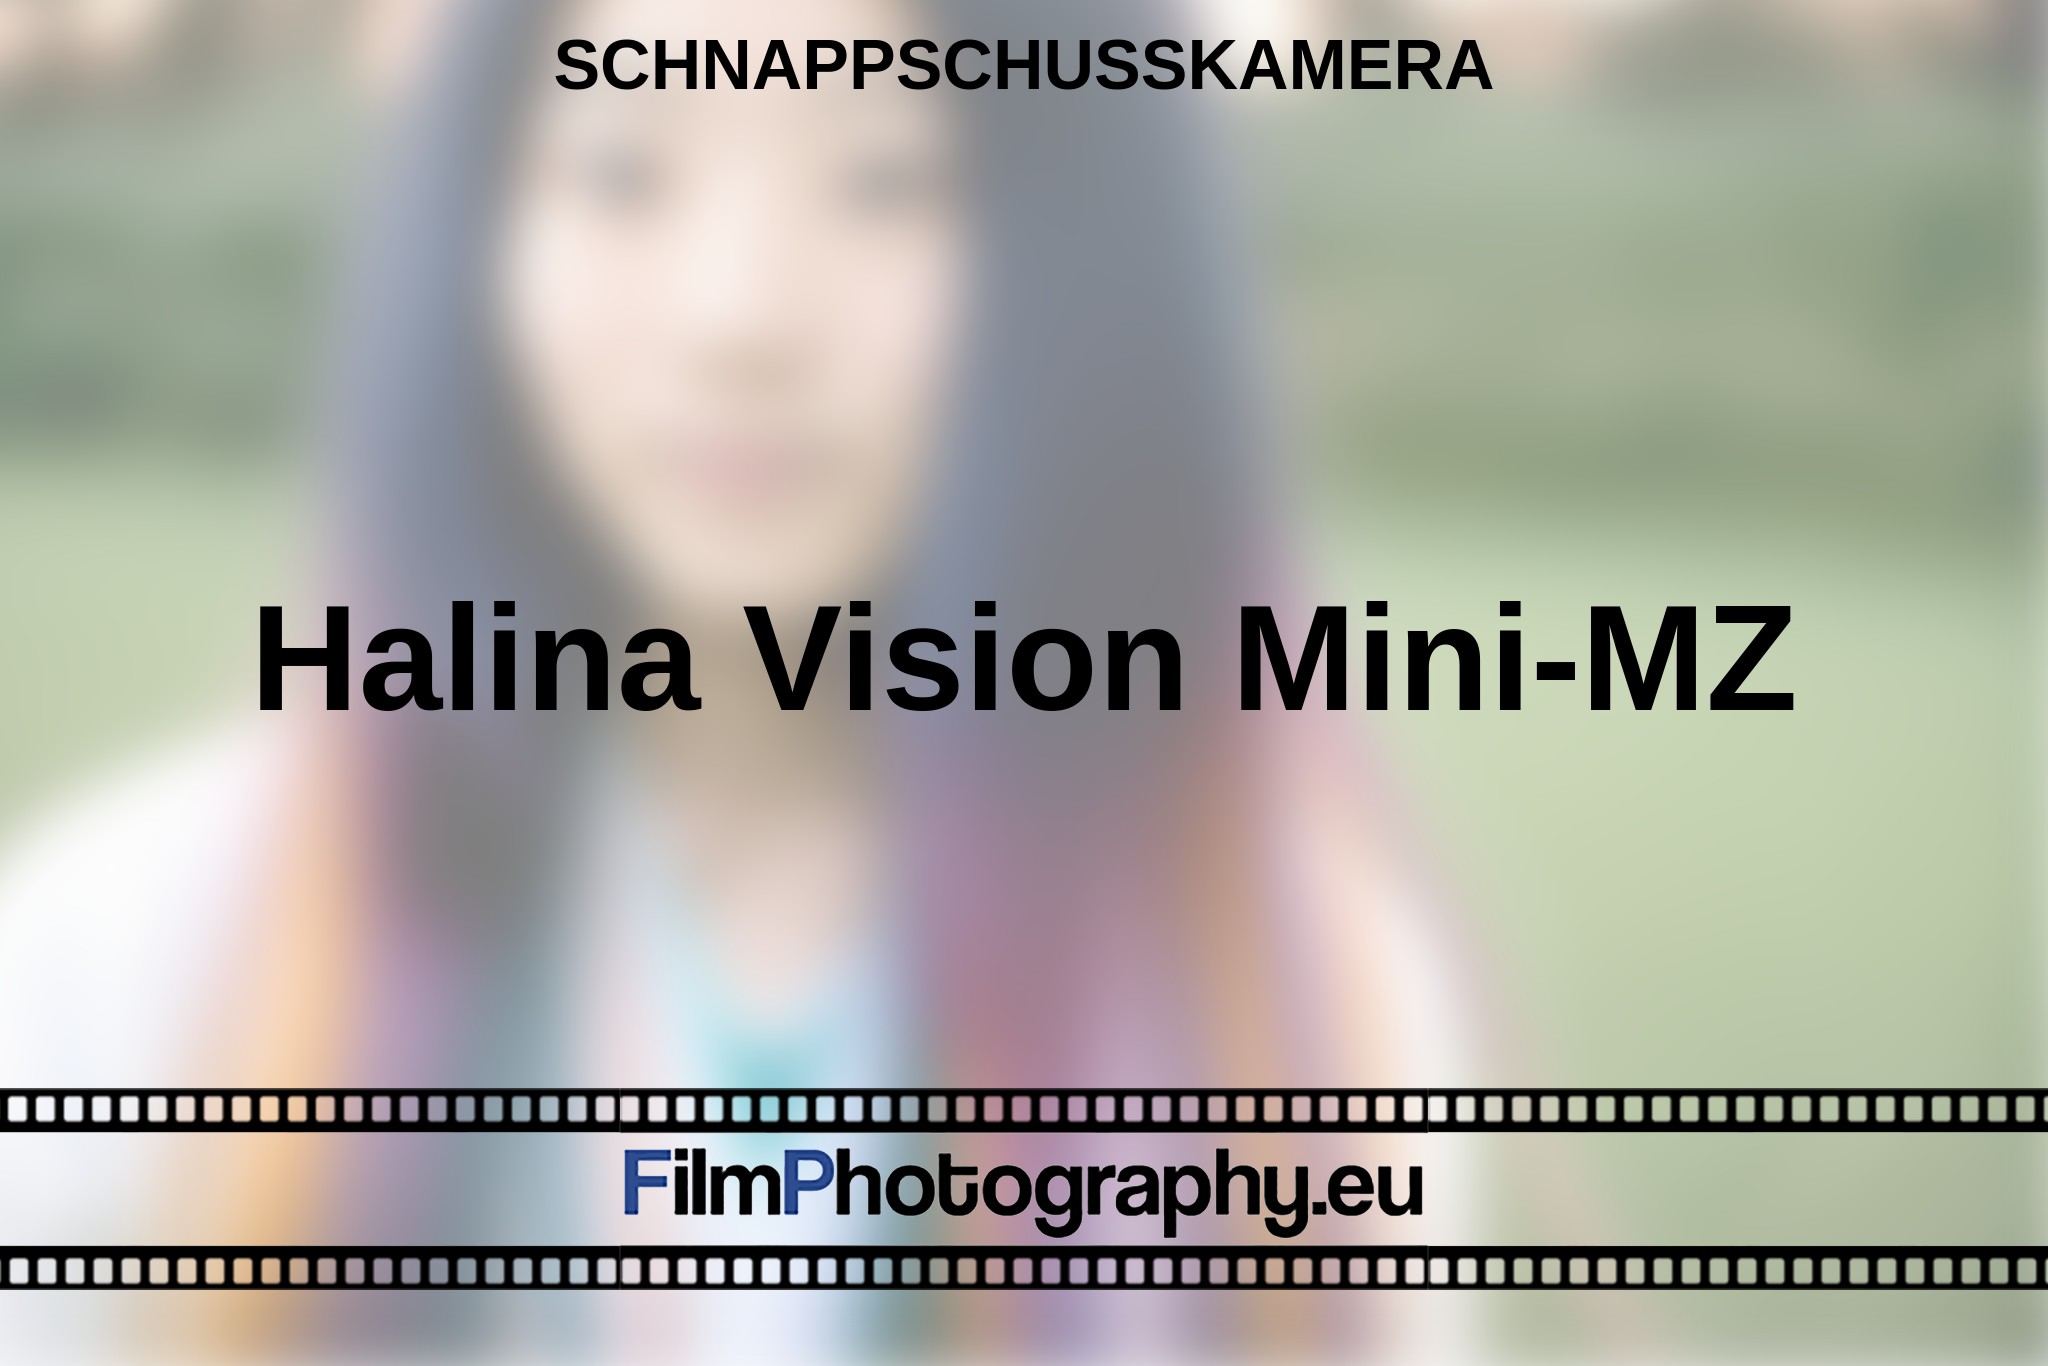 halina-vision-mini-mz-schnappschusskamera-bnv.jpg